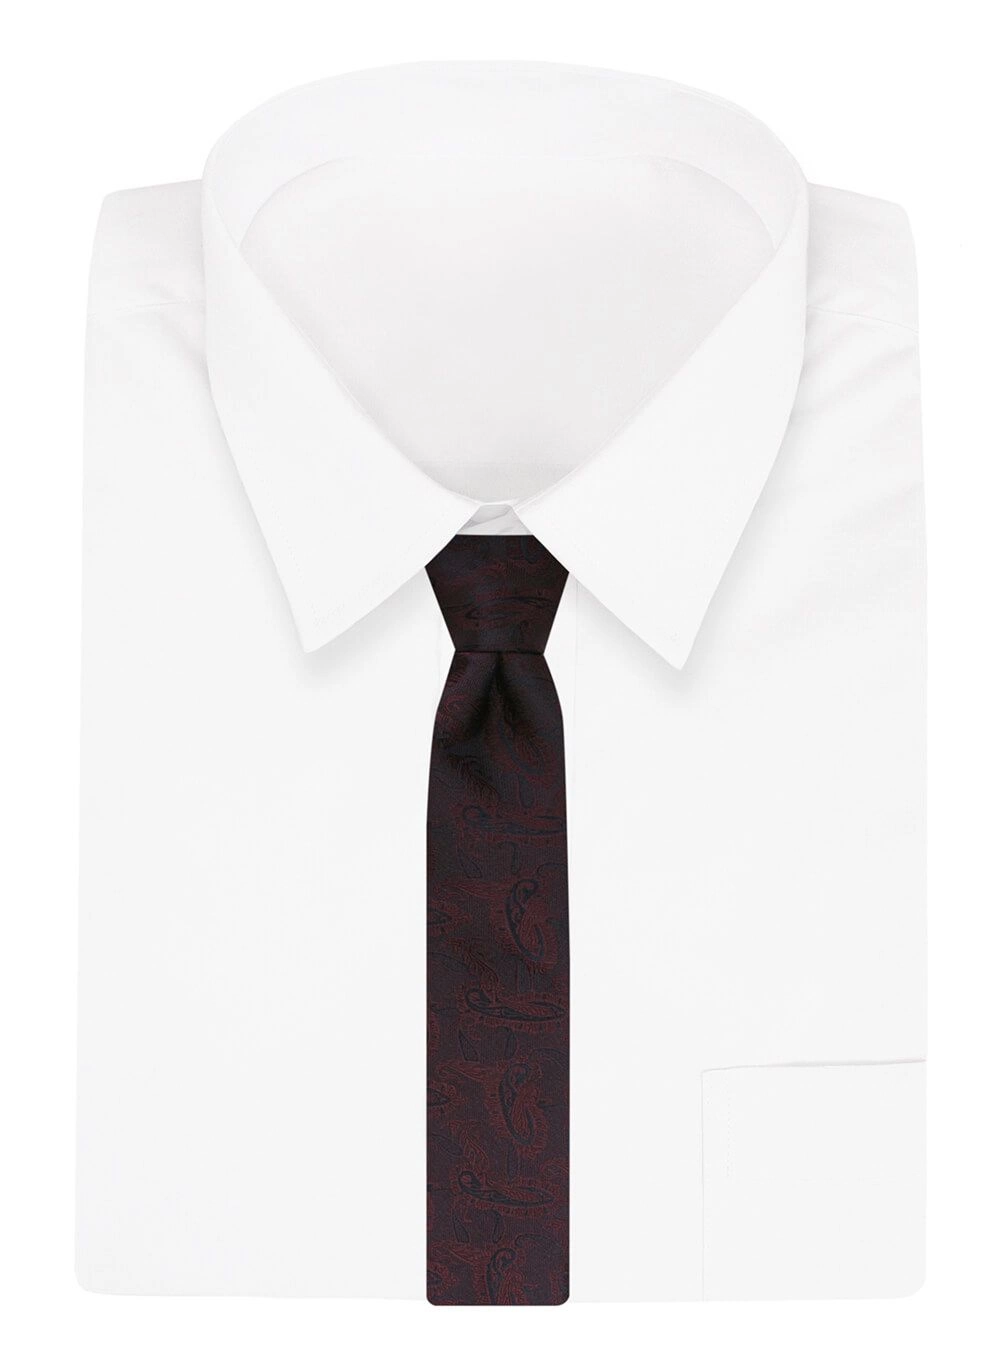 Krawat Ciemnoczerwony, Męski, Klasyczny, Szeroki 8 cm, Elegancki -CHATTIER